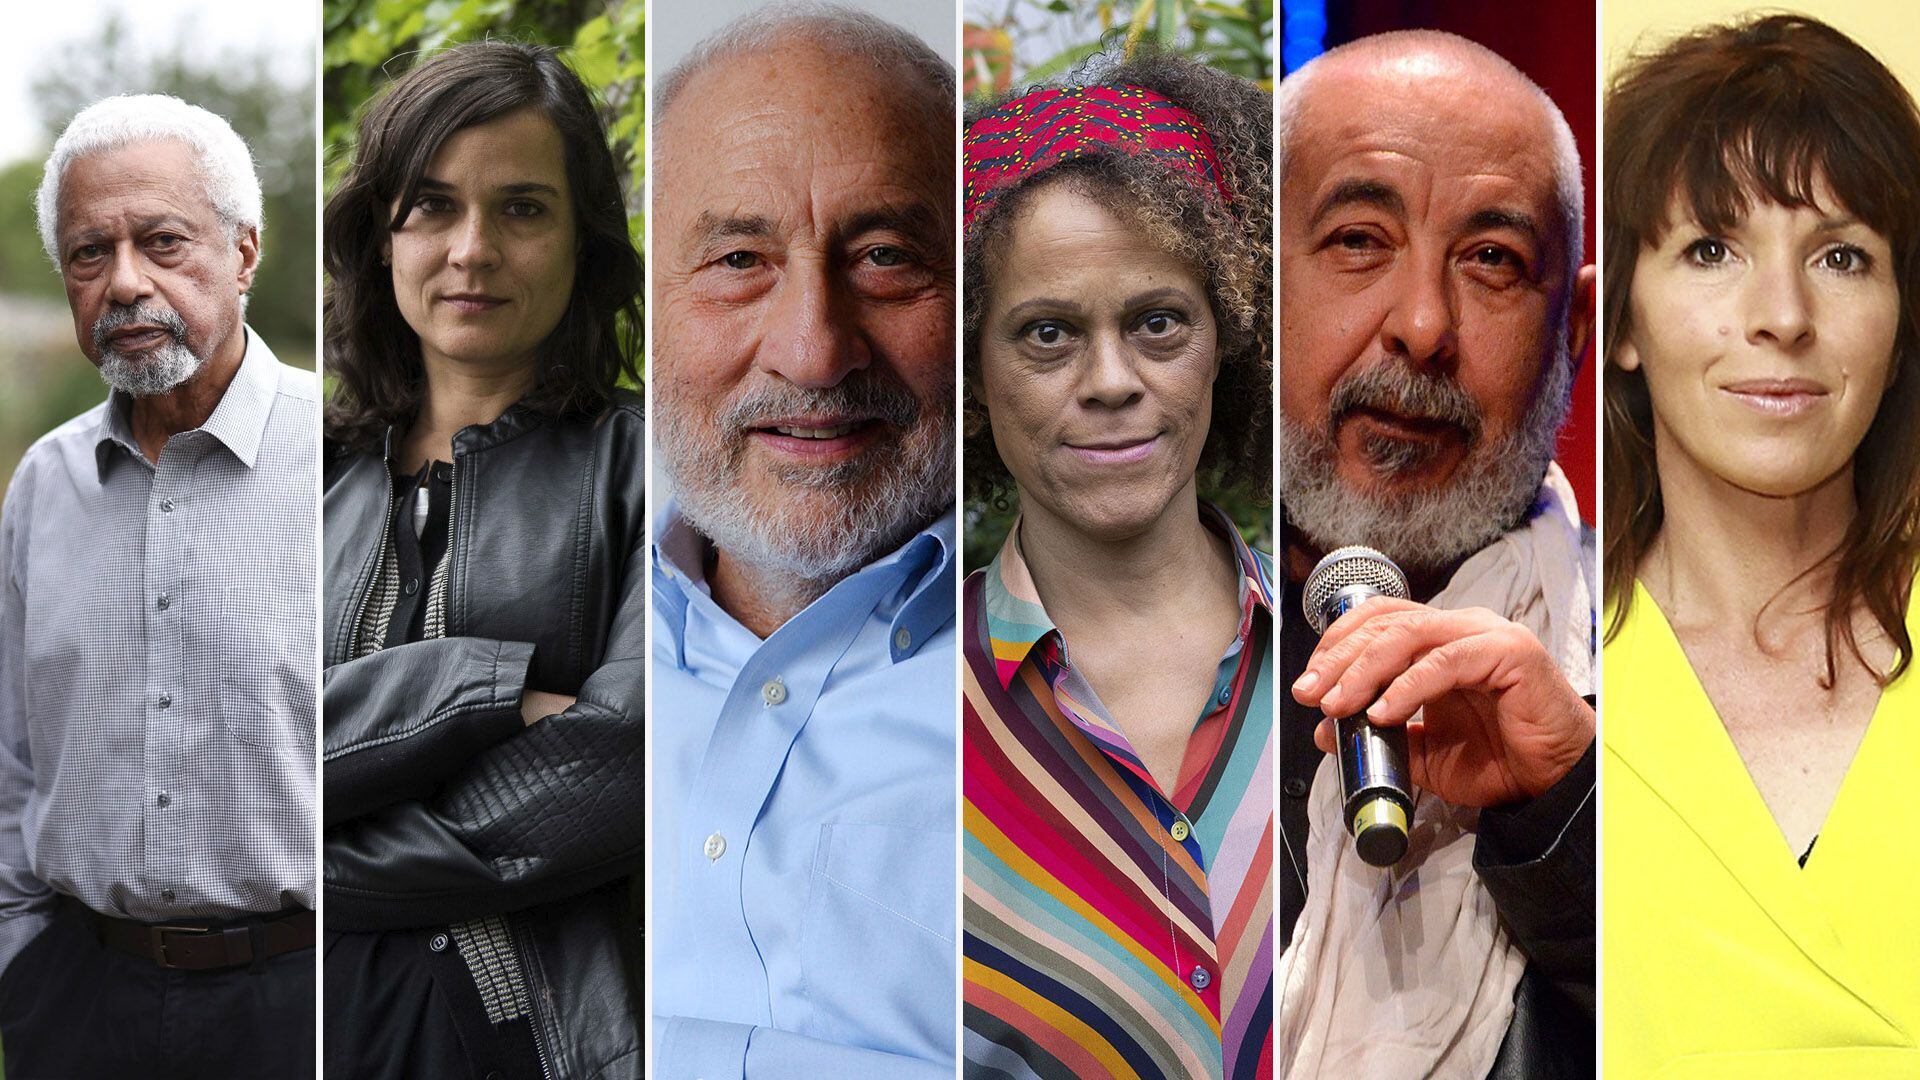 Abdulrazak Gurnah, Carolina Sanín, Joseph Stiglitz, Bernardine Evaristo, Leonardo Padura, Rachel Cusk